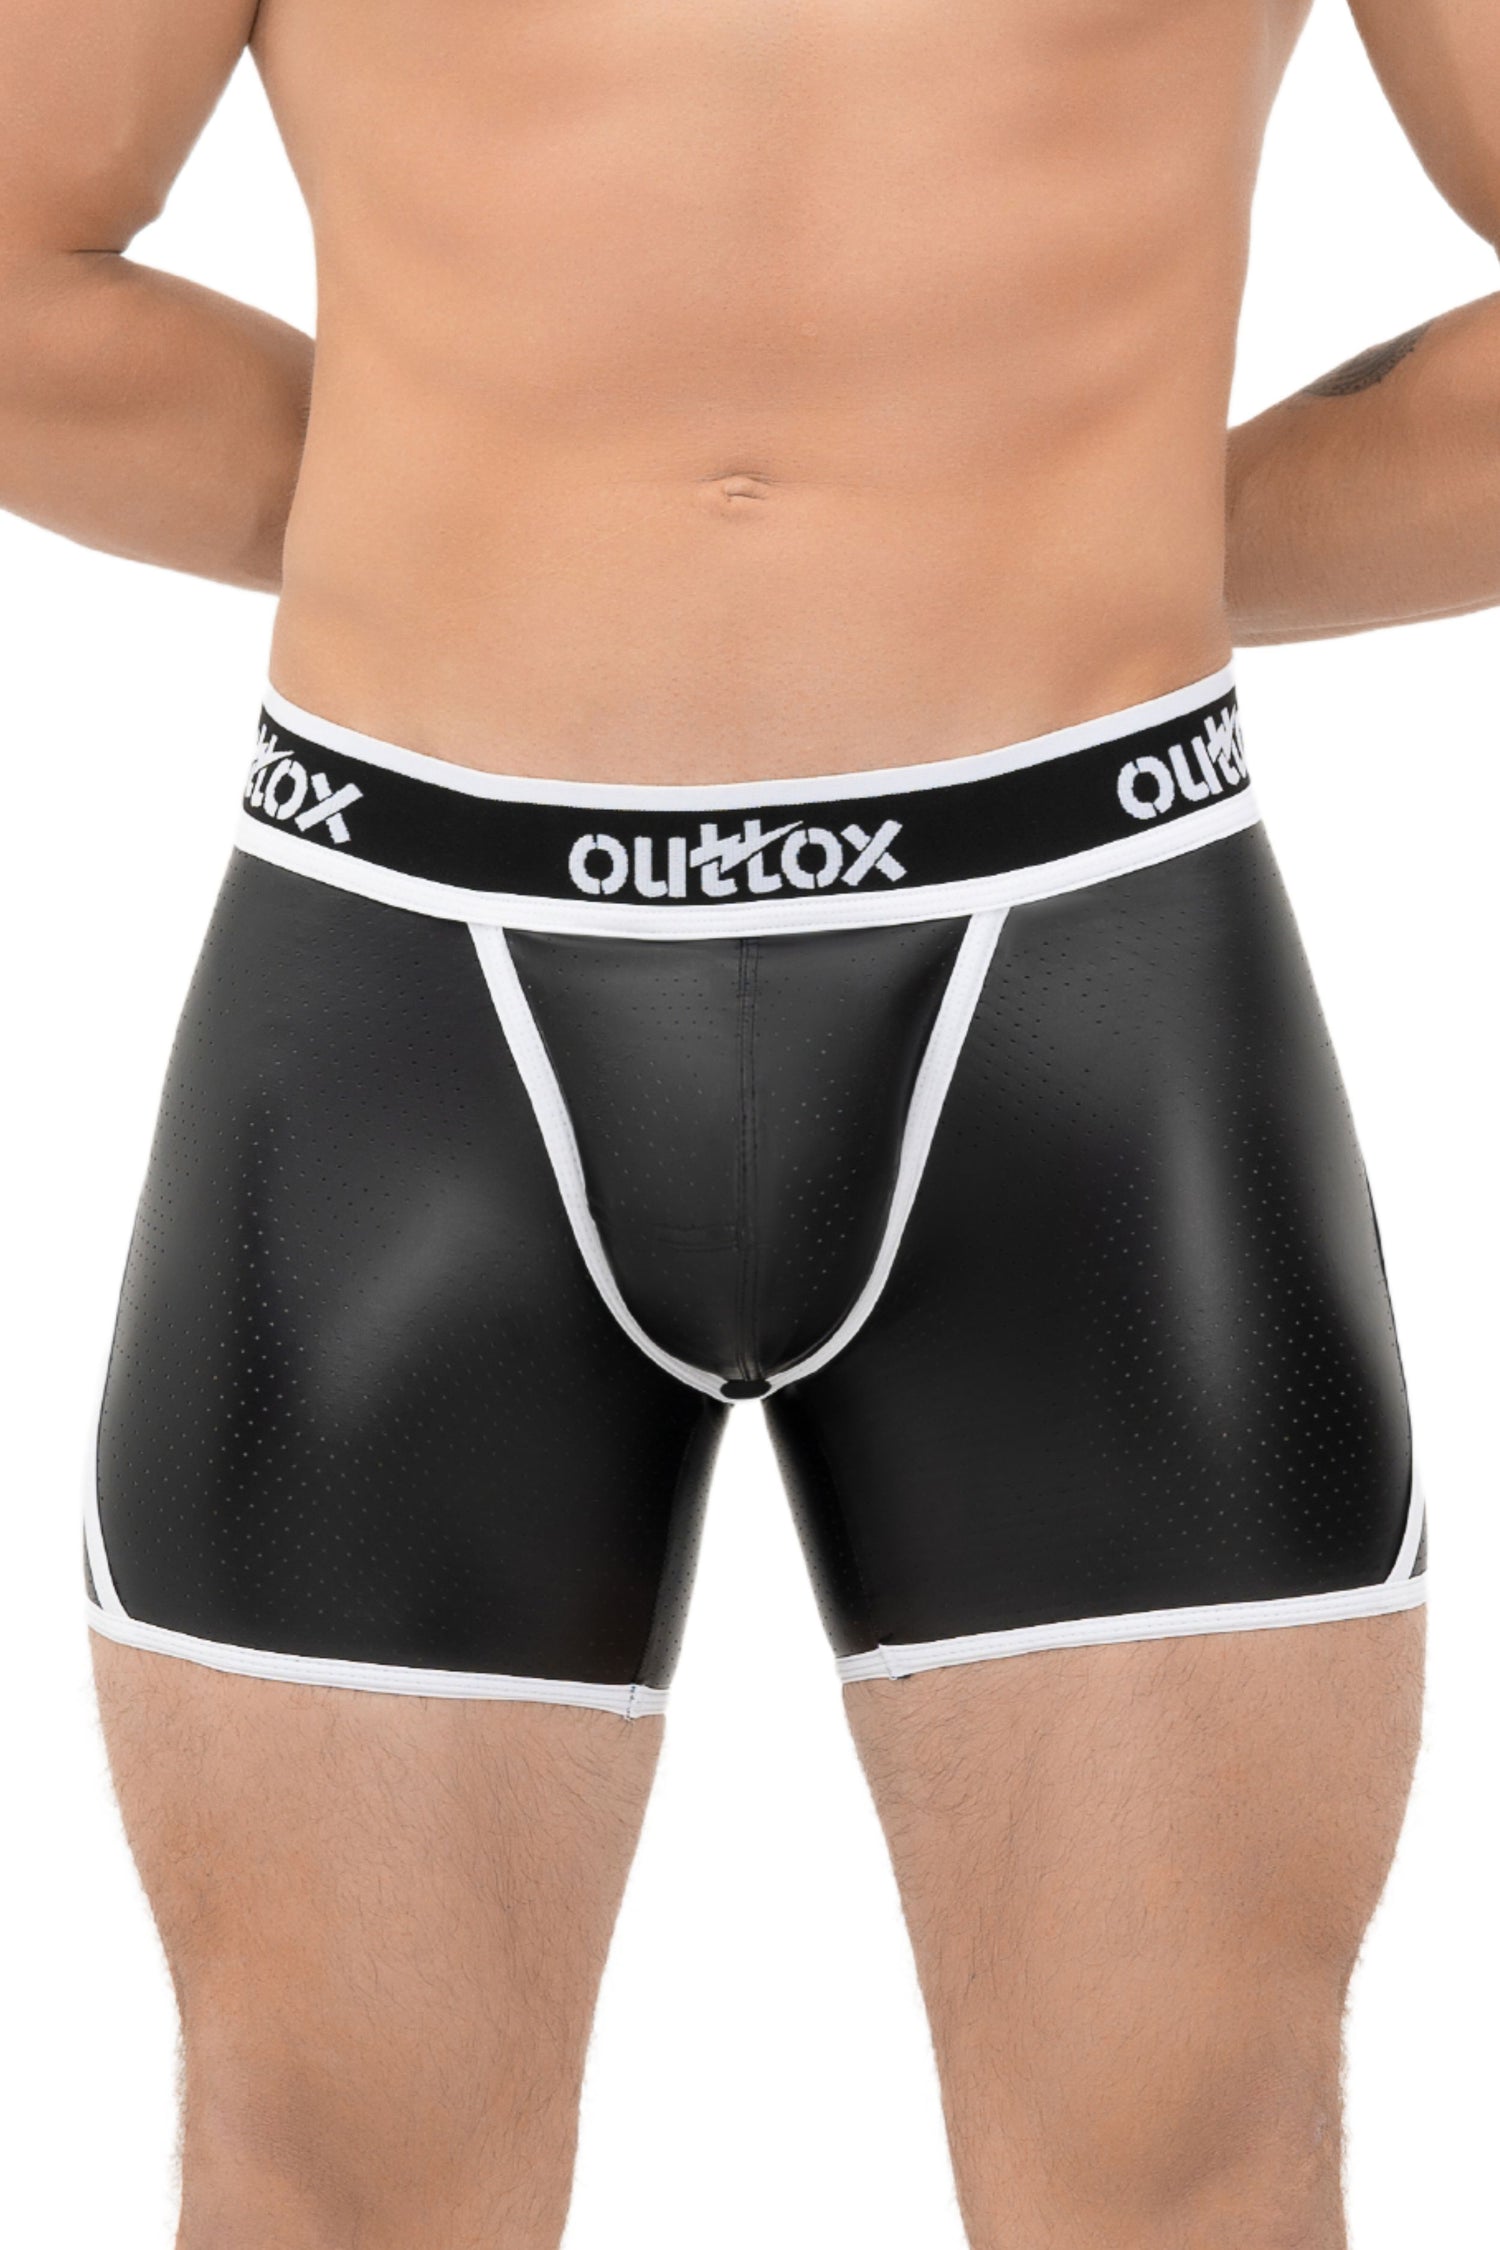 Outtox. Pantalones cortos traseros abiertos con bragueta a presión. Negro+Blanco